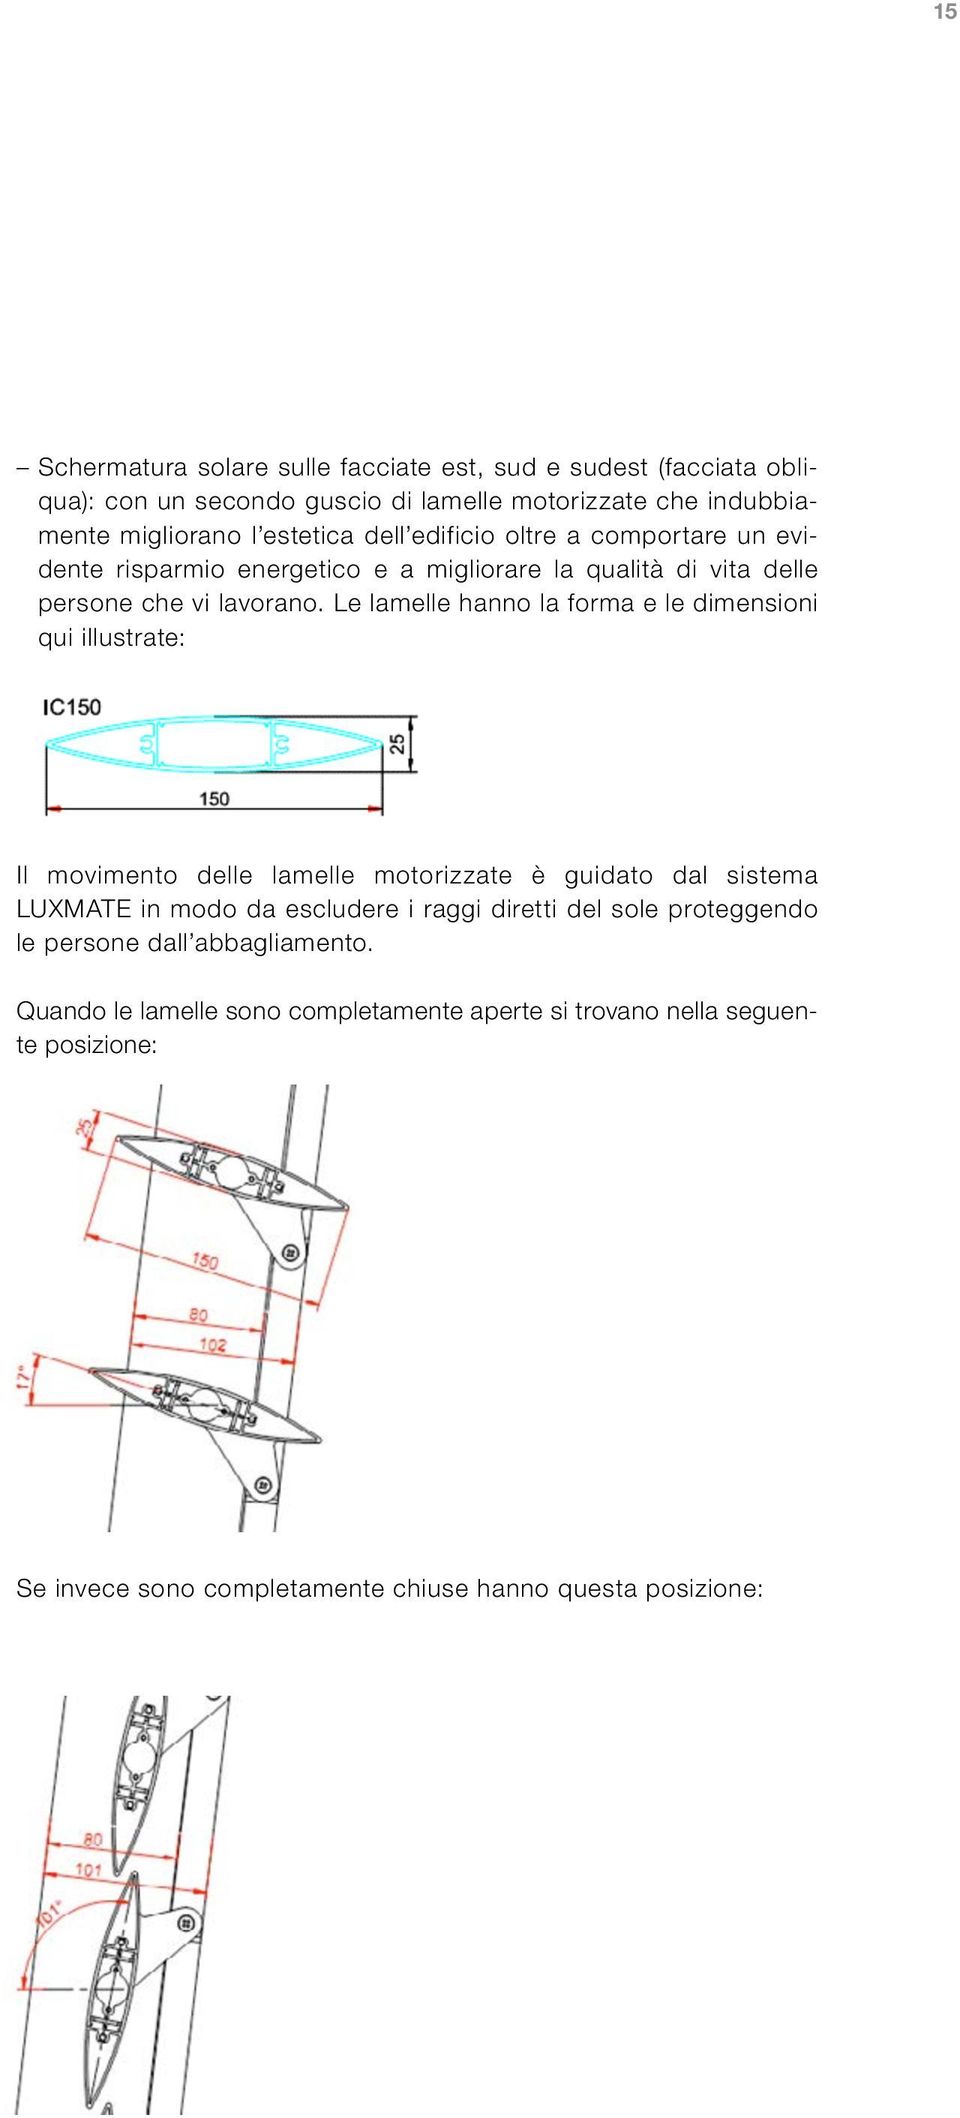 Le lamelle hanno la forma e le dimensioni qui illustrate: Il movimento delle lamelle motorizzate è guidato dal sistema LUXMATE in modo da escludere i raggi